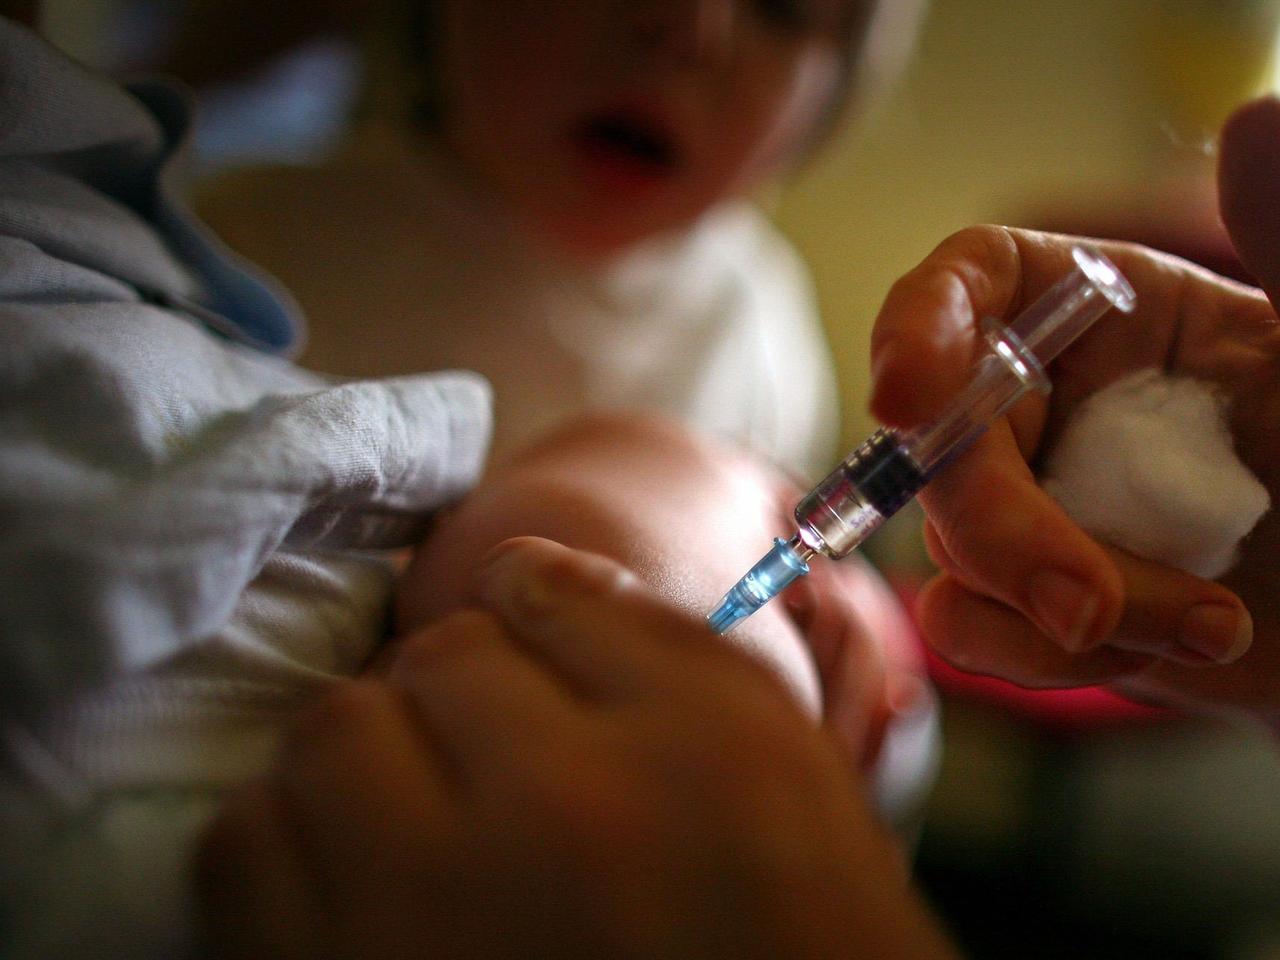 パンデミックで予防接種に空白が生じている。